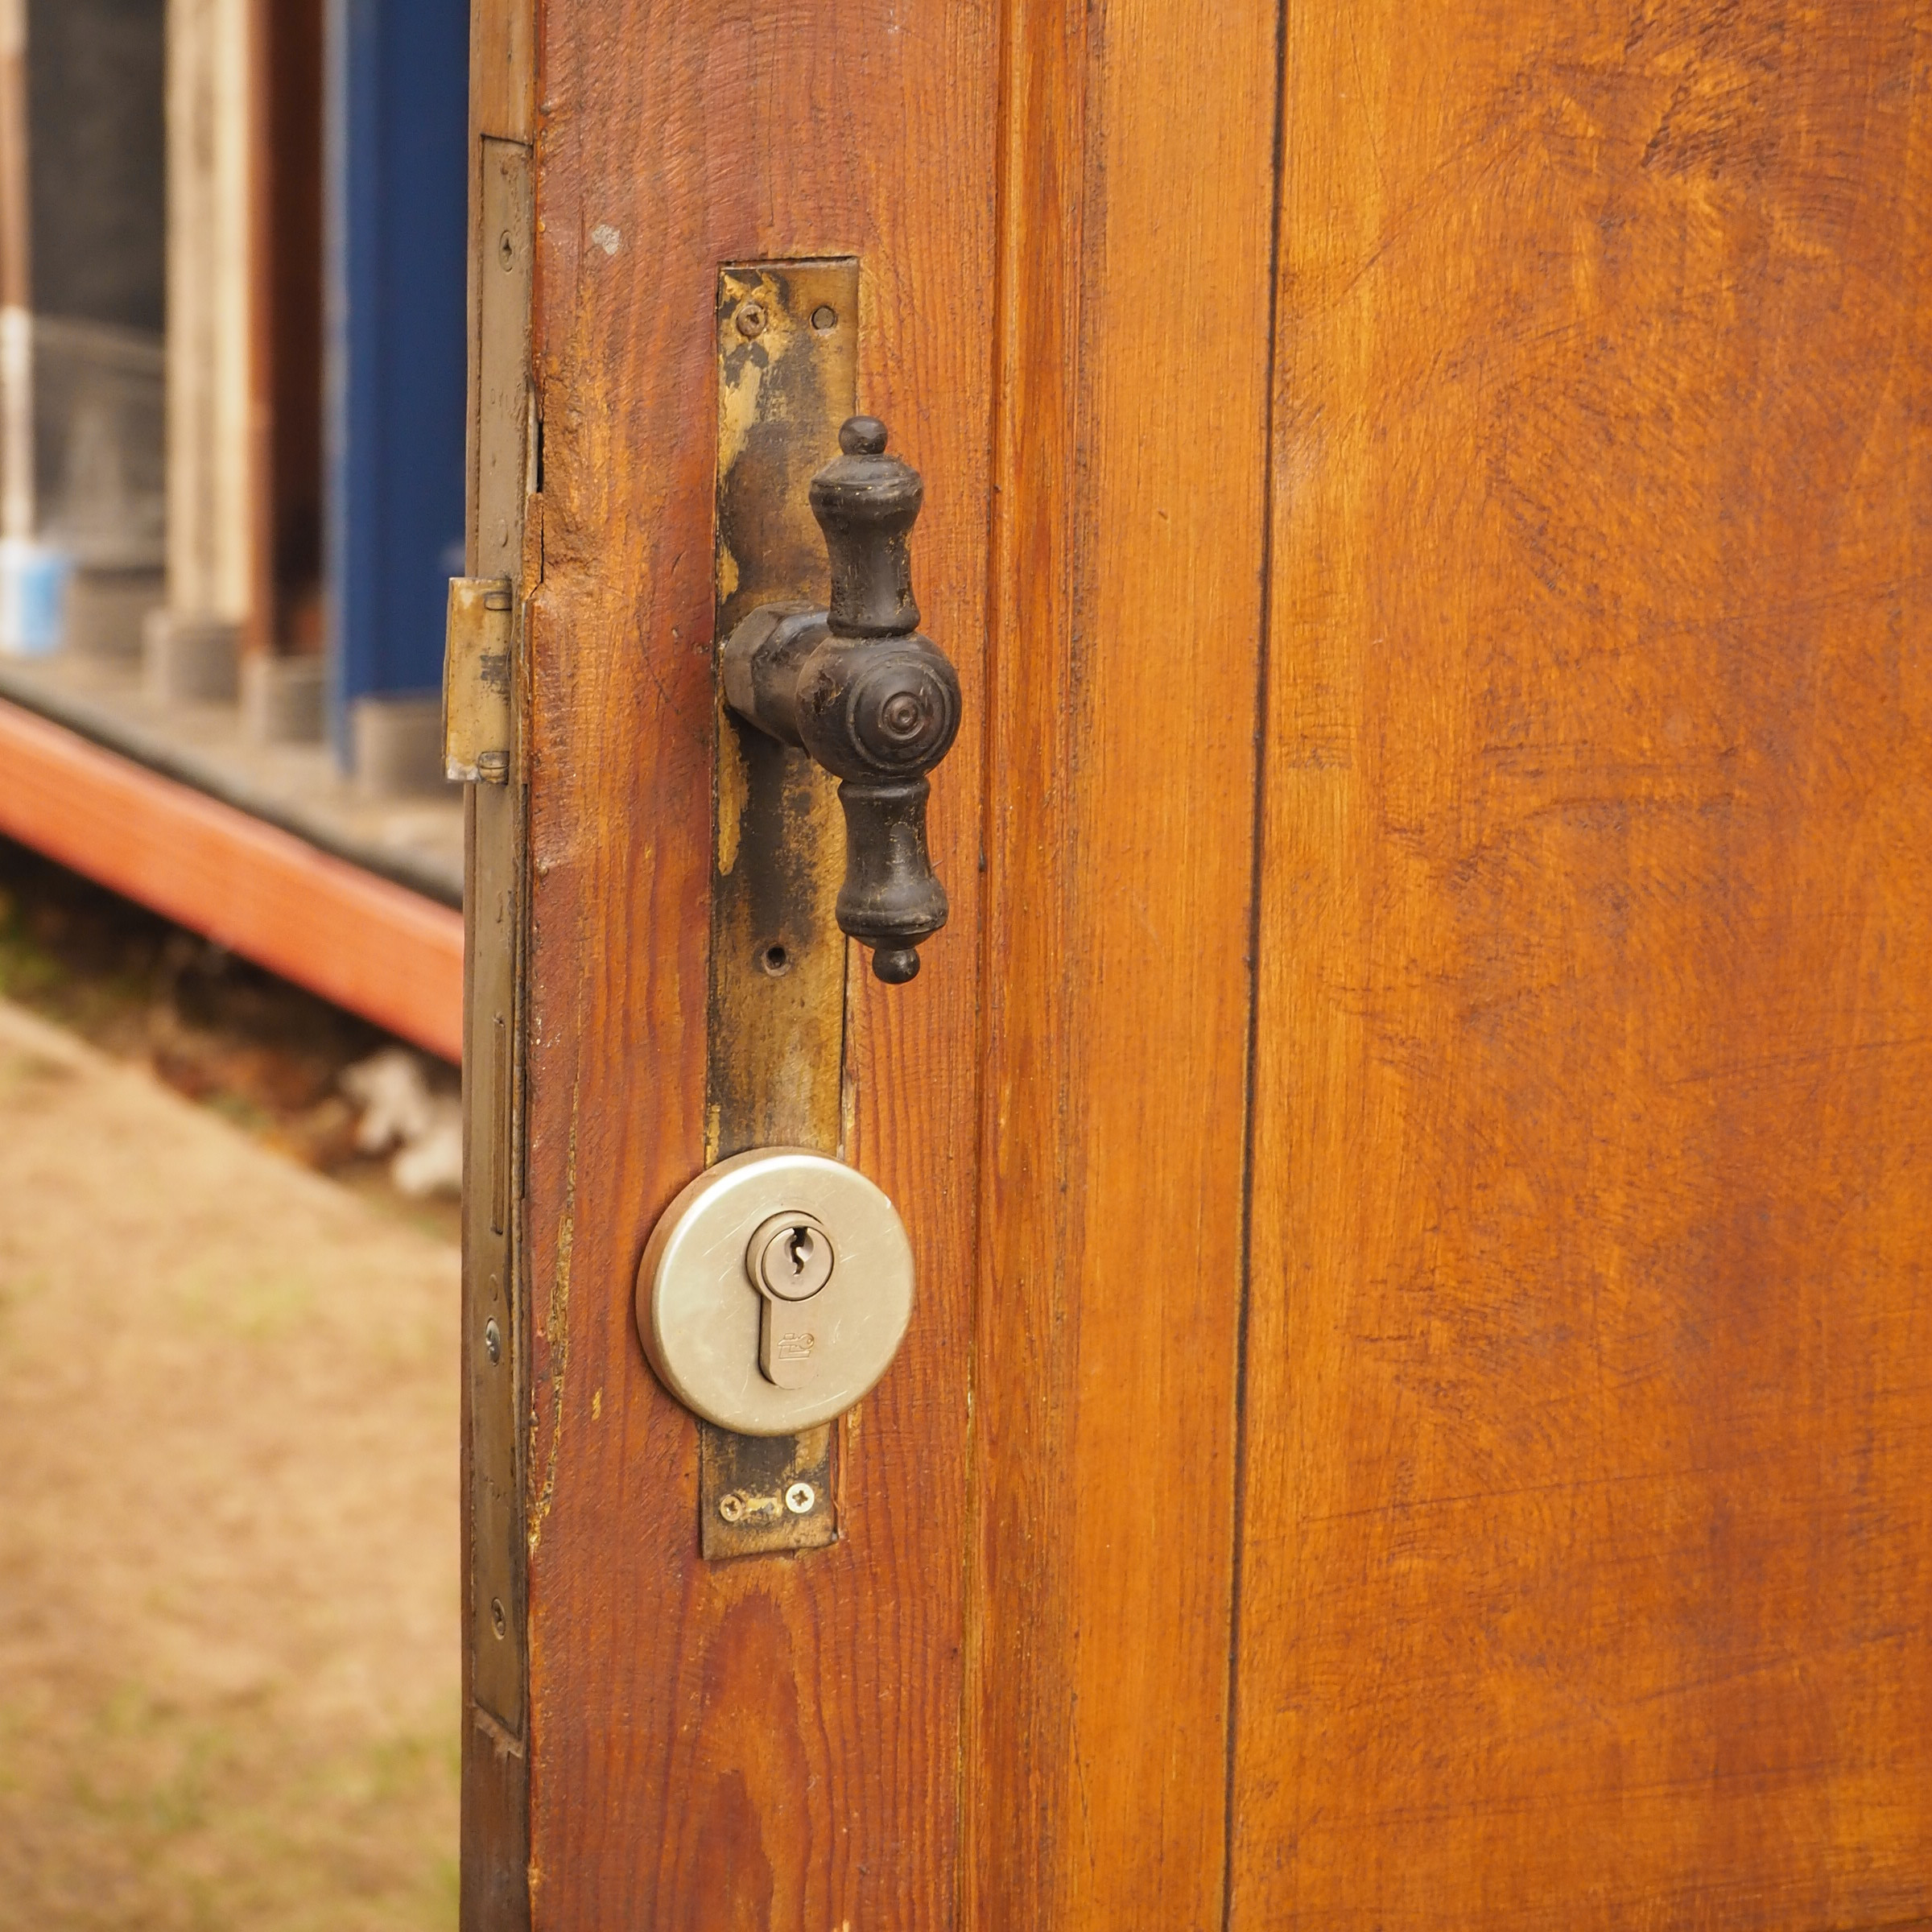 Wooden door (H. 214 x W. 92,5 cm) - Left